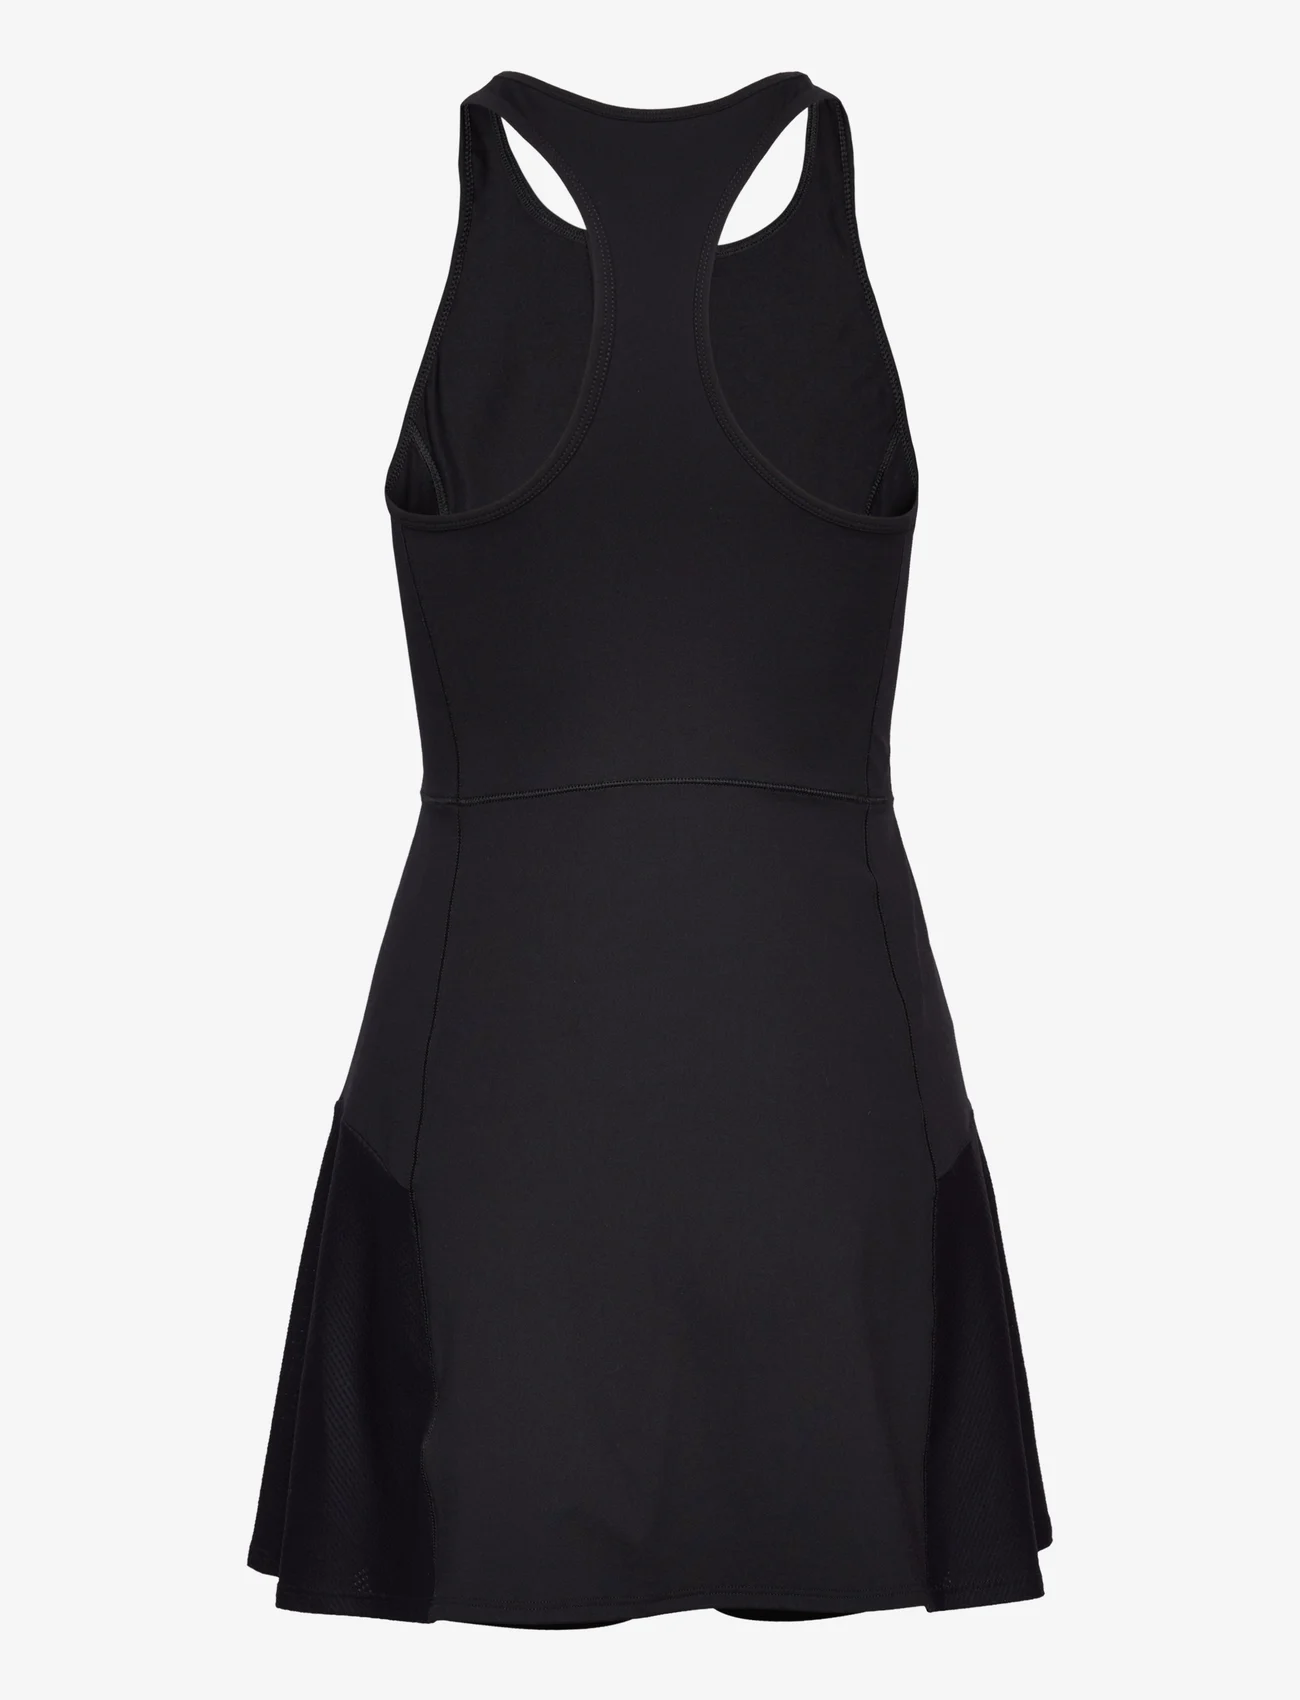 Casall - Court Dress - sportinės suknelės - black - 1